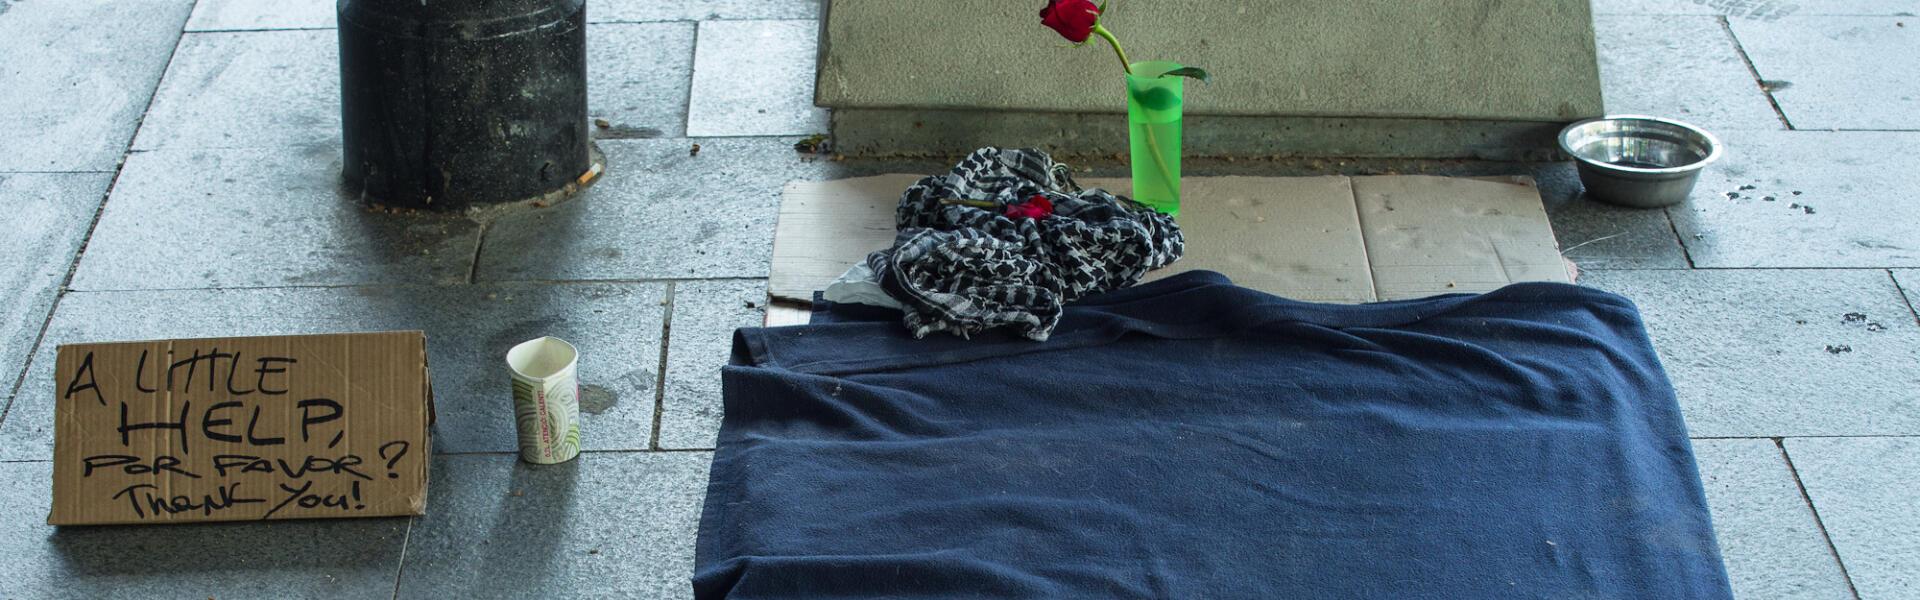 matge cartrons al carrer que serveixen de "llit" per a una persona sense llar